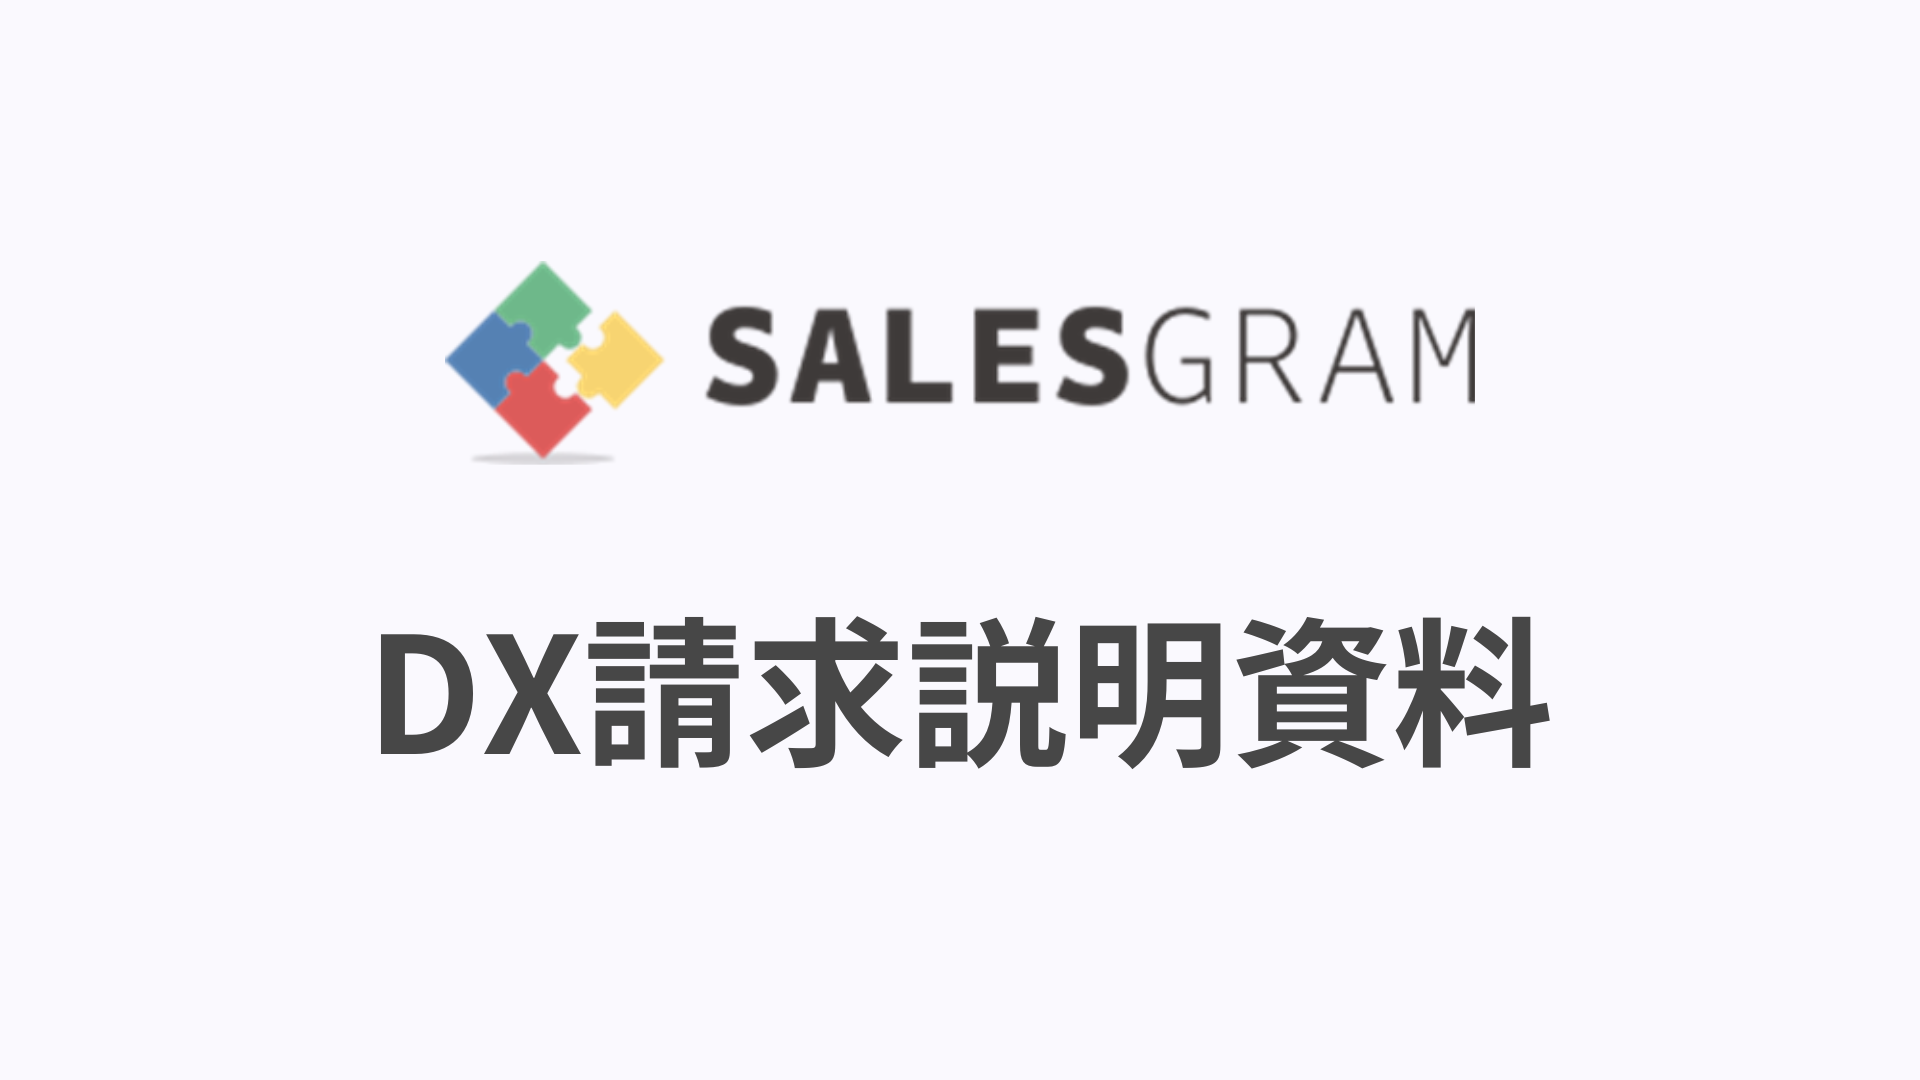 クラウド請求書のDX請求の説明資料の文字ロゴ